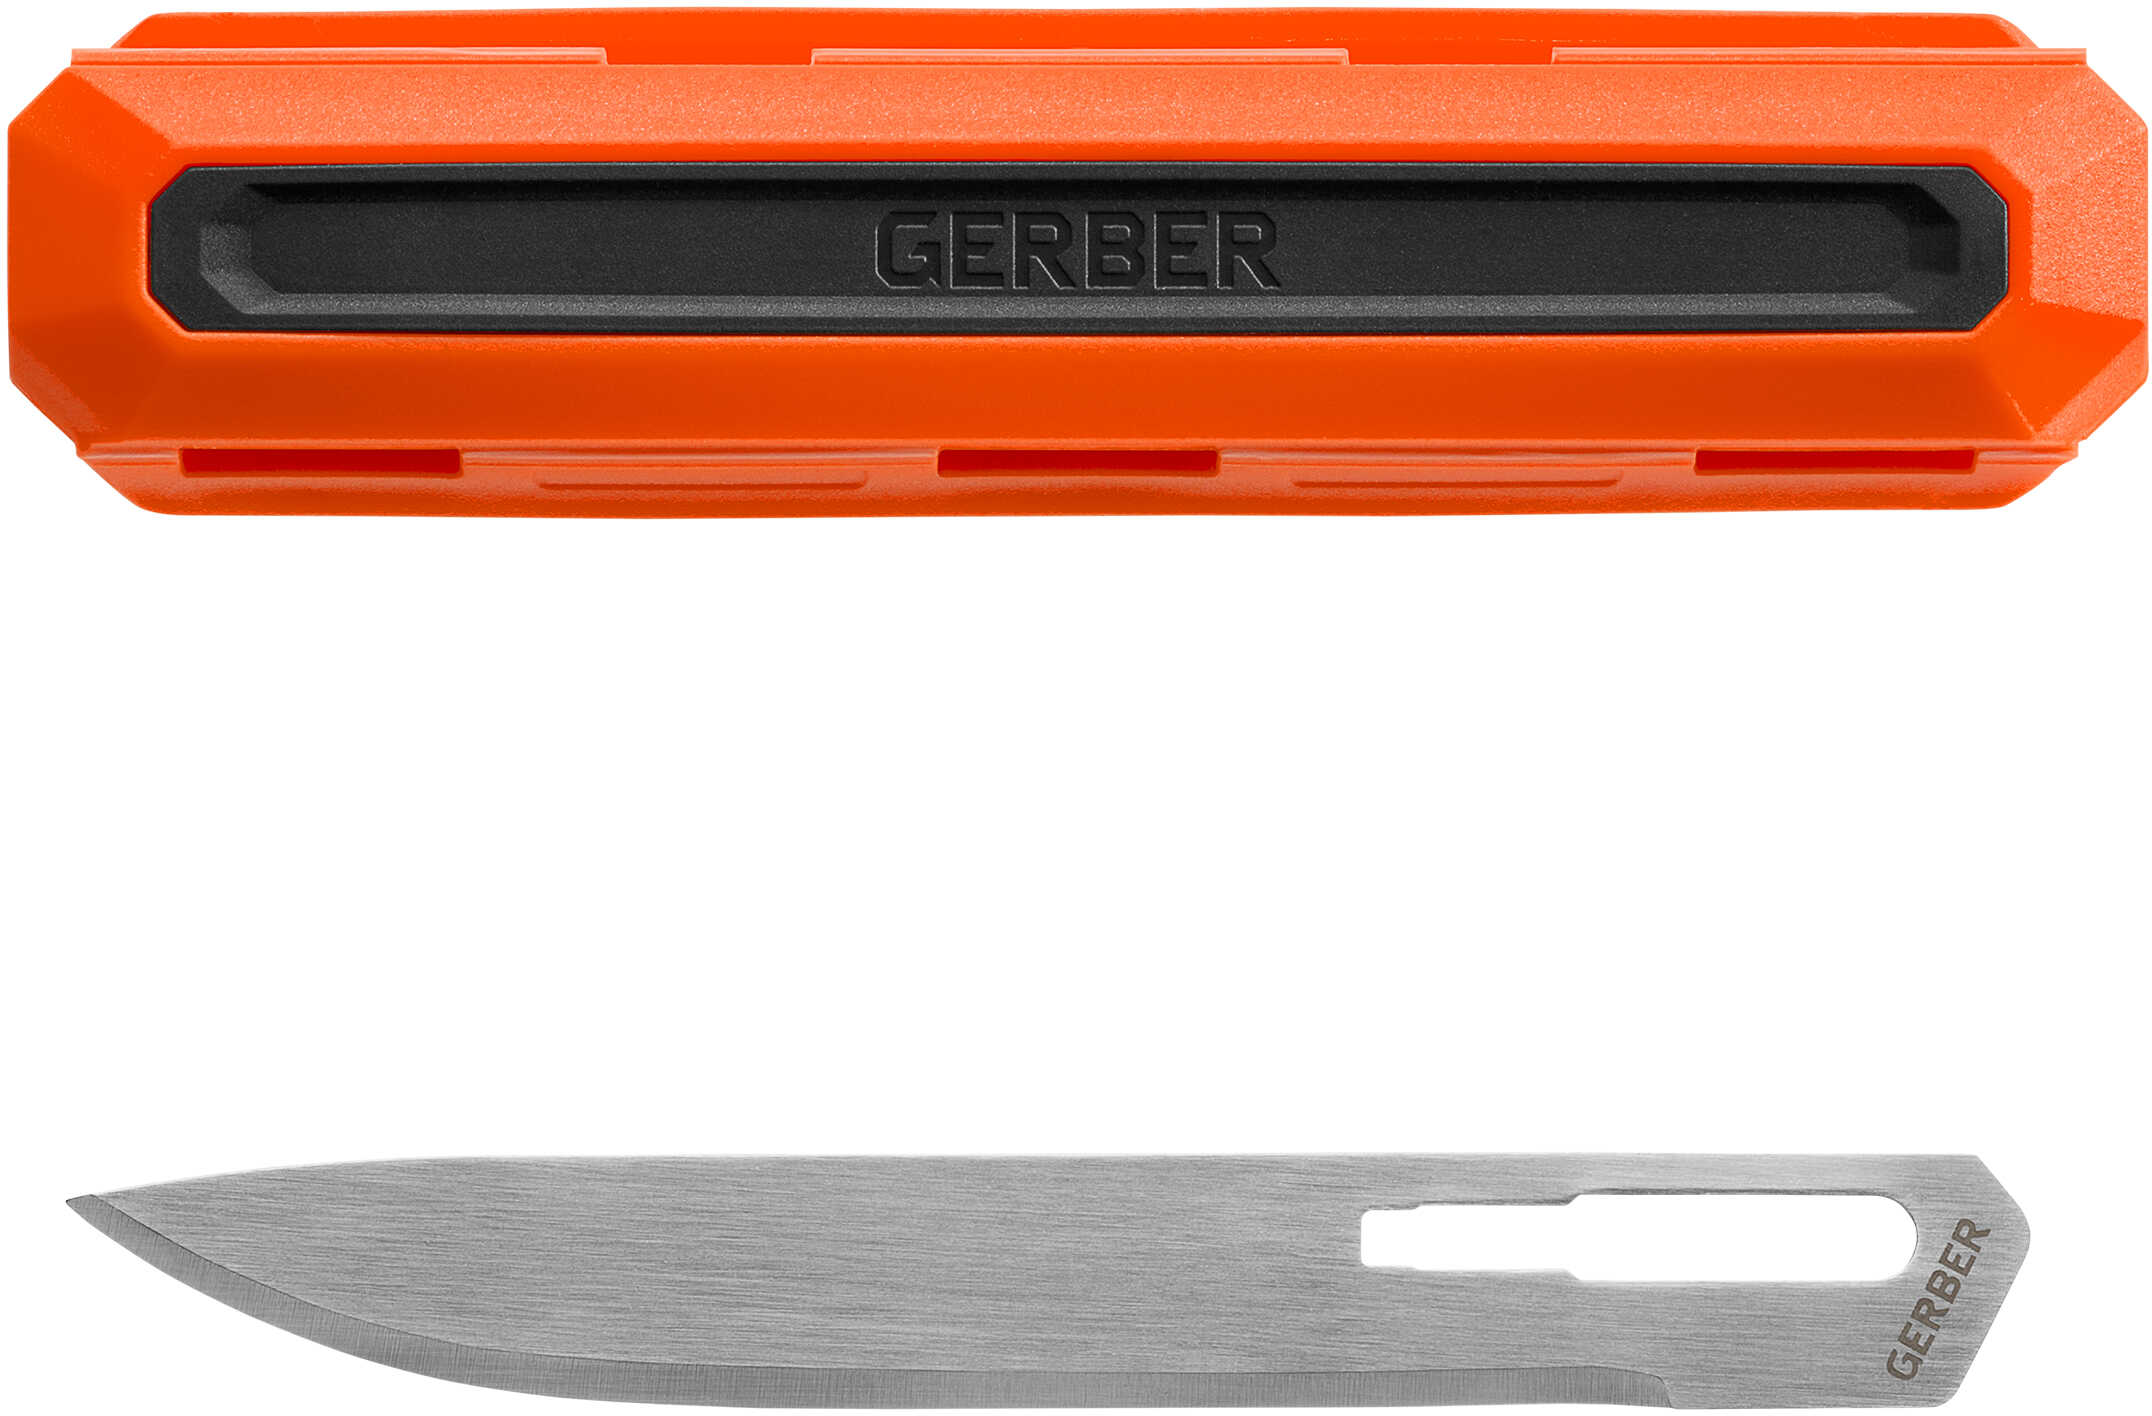 Gerber Blades Vital Replacment Drop Point 5 pk. Model: 31-003085